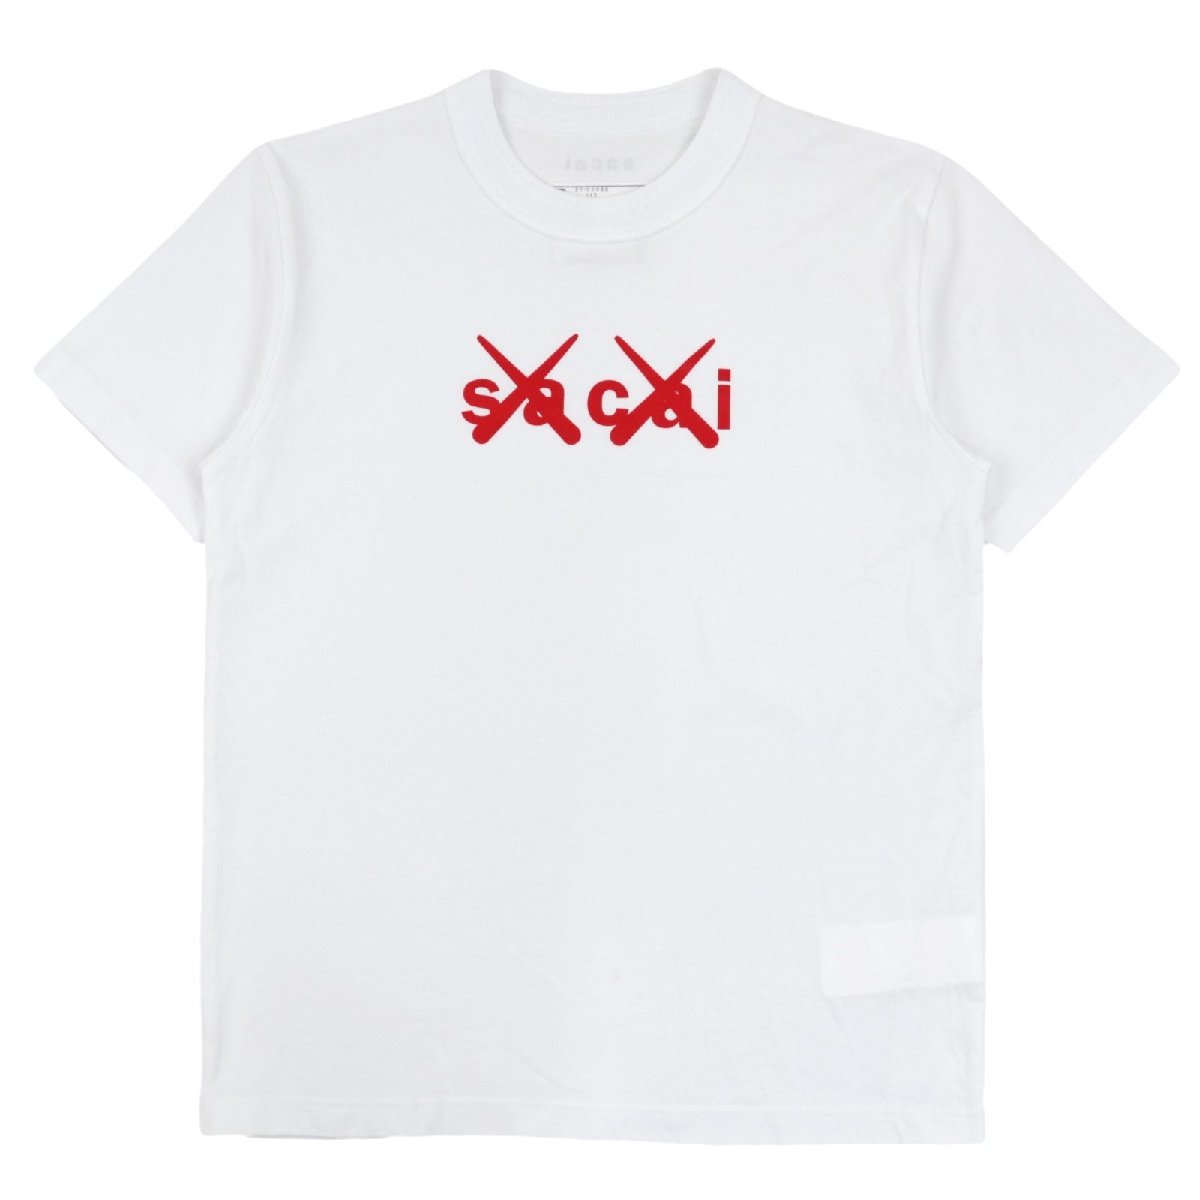 美品 サカイ×カウズ 21AW フロックプリント ロゴ 半袖Tシャツ メンズ 白 赤 sacai×KAWS